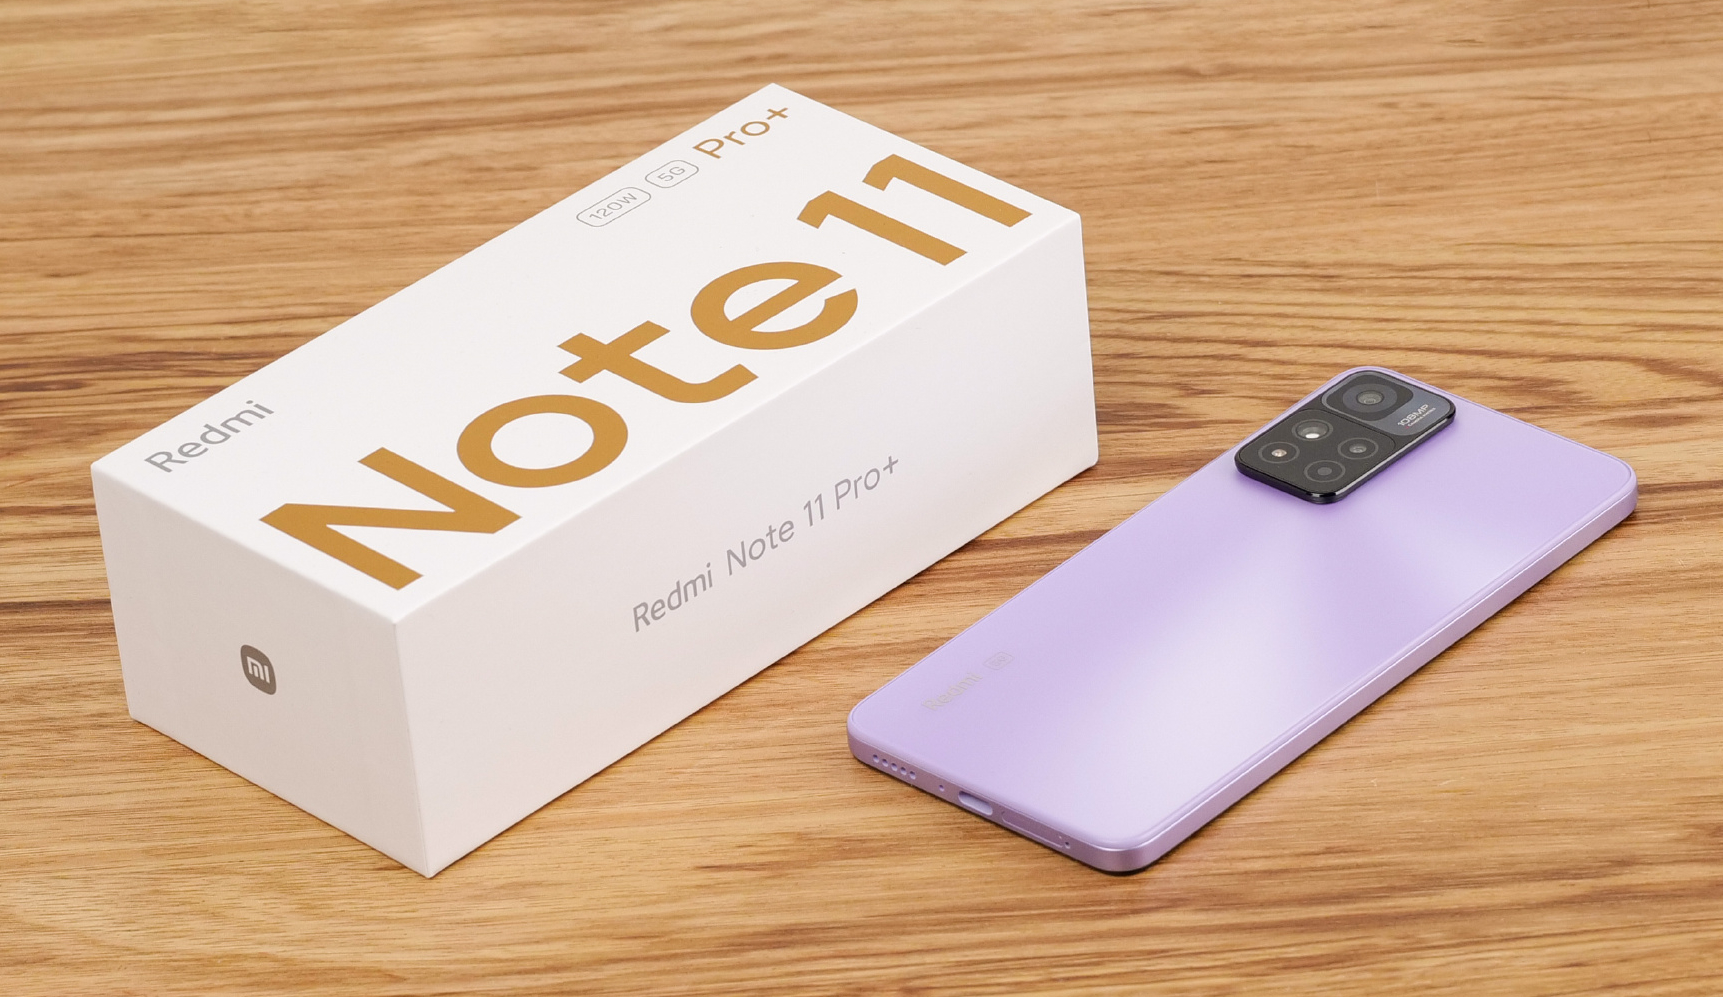 Redmi Note 11 Pro+